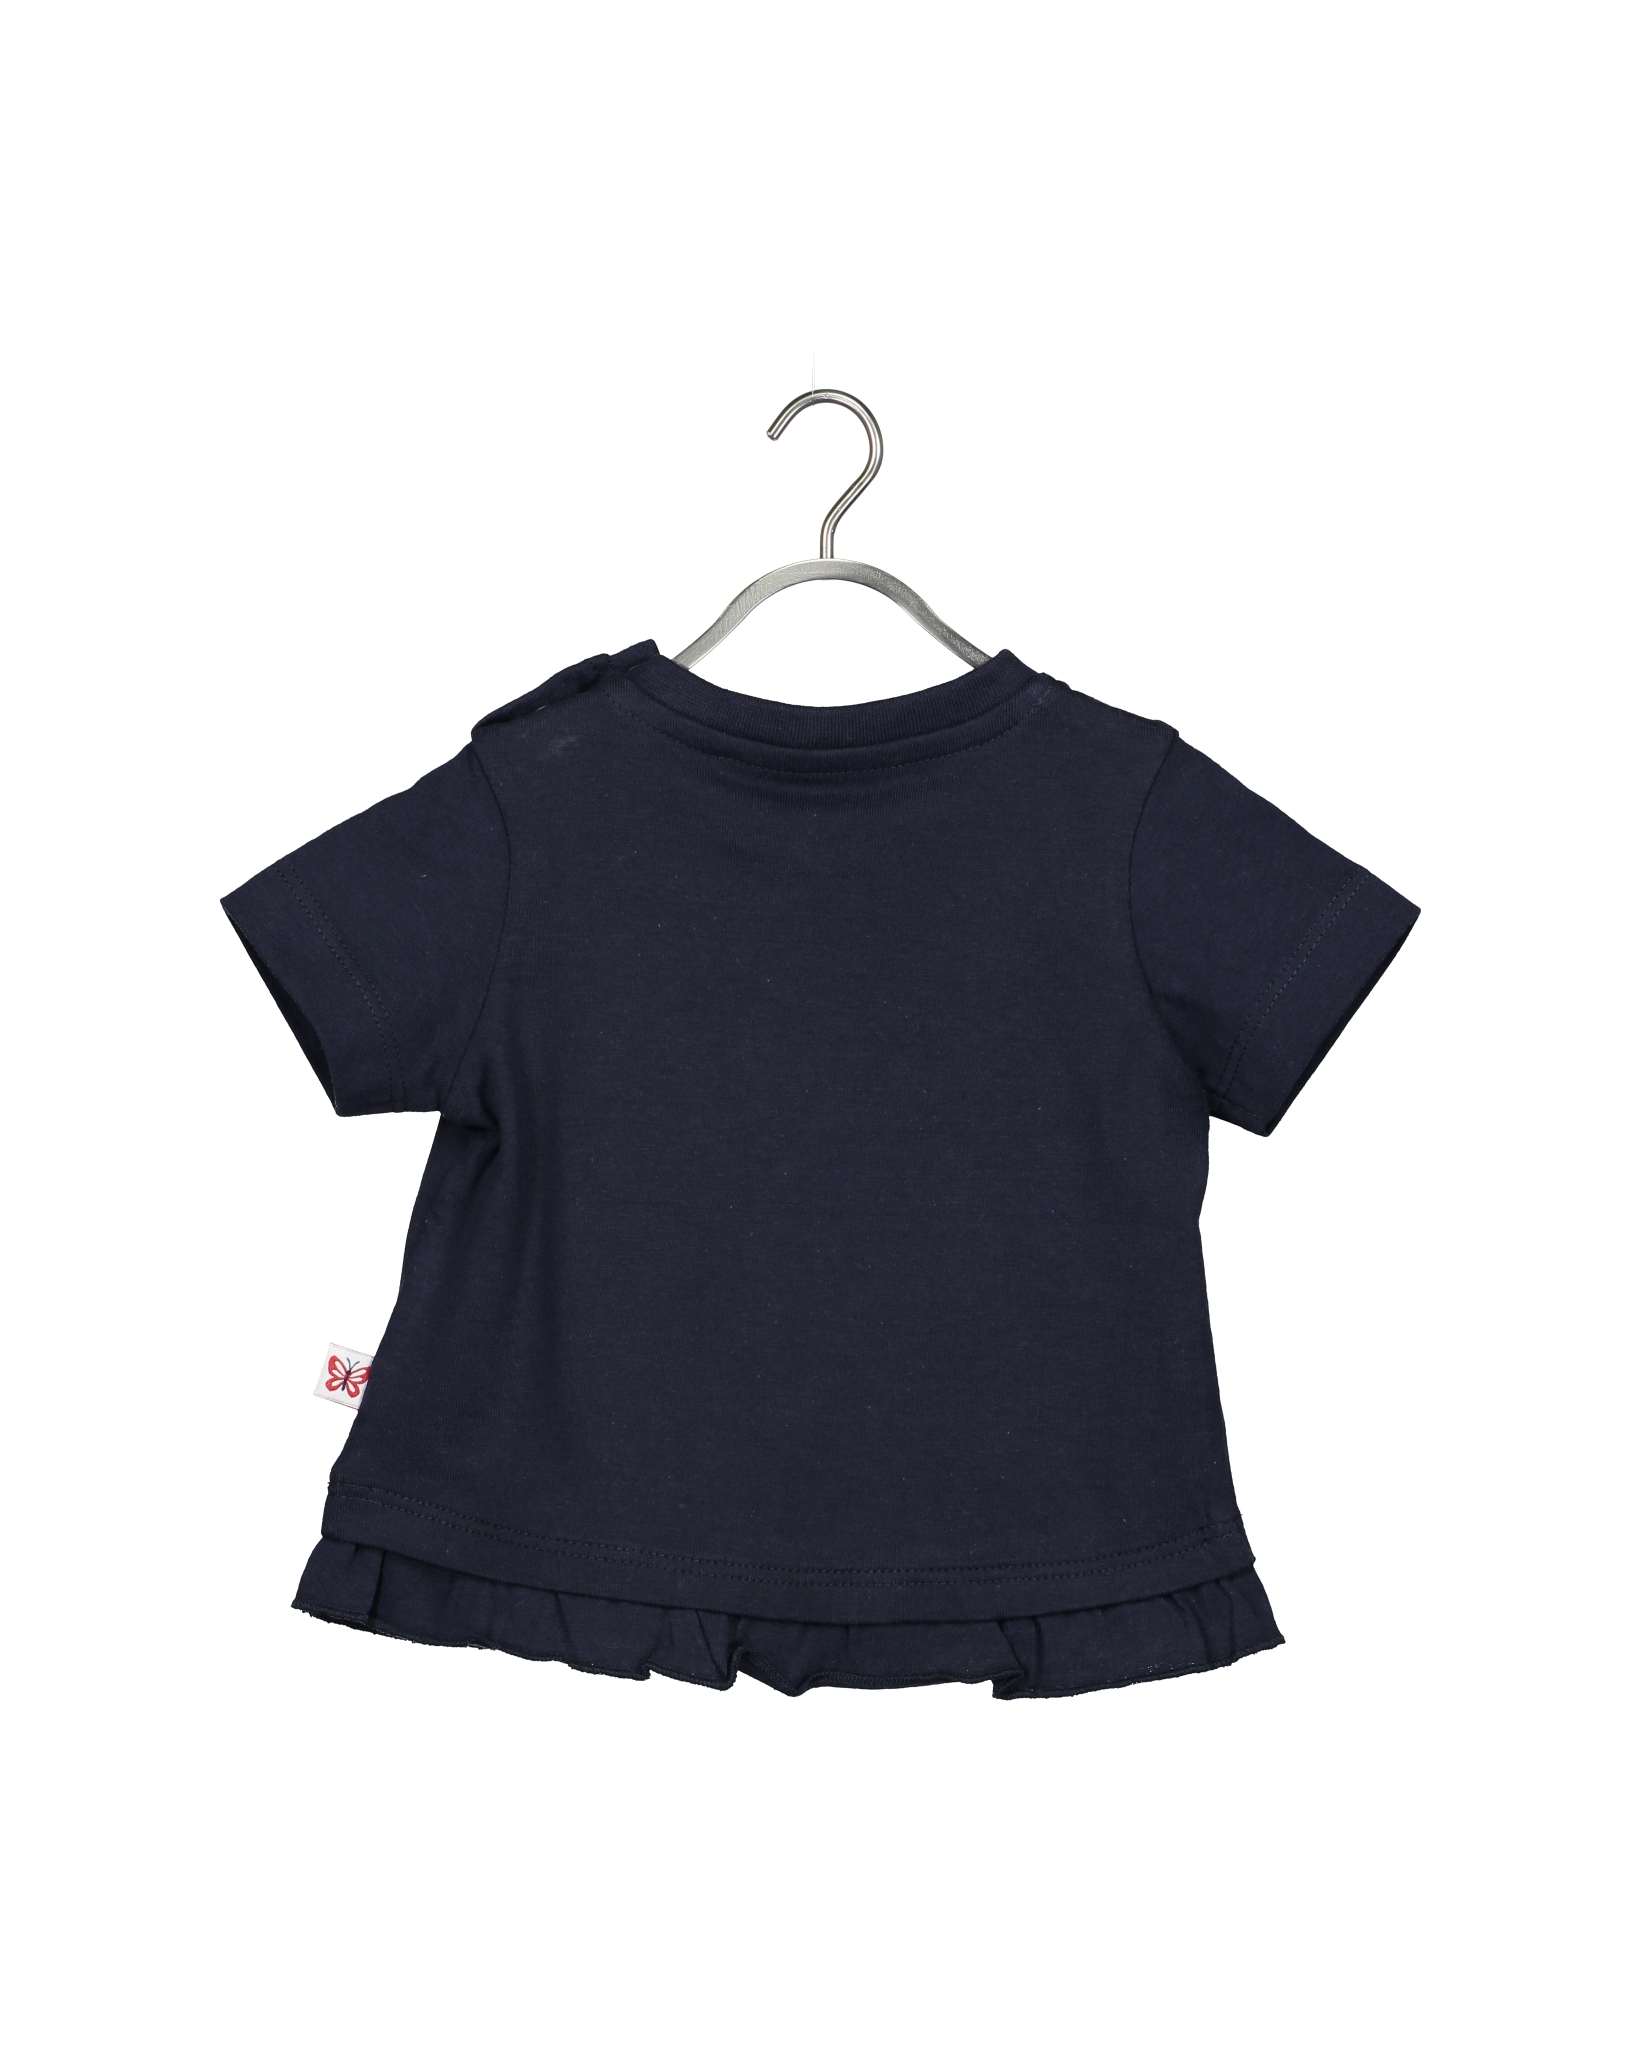 Blue Seven Baby T-Shirt Dream